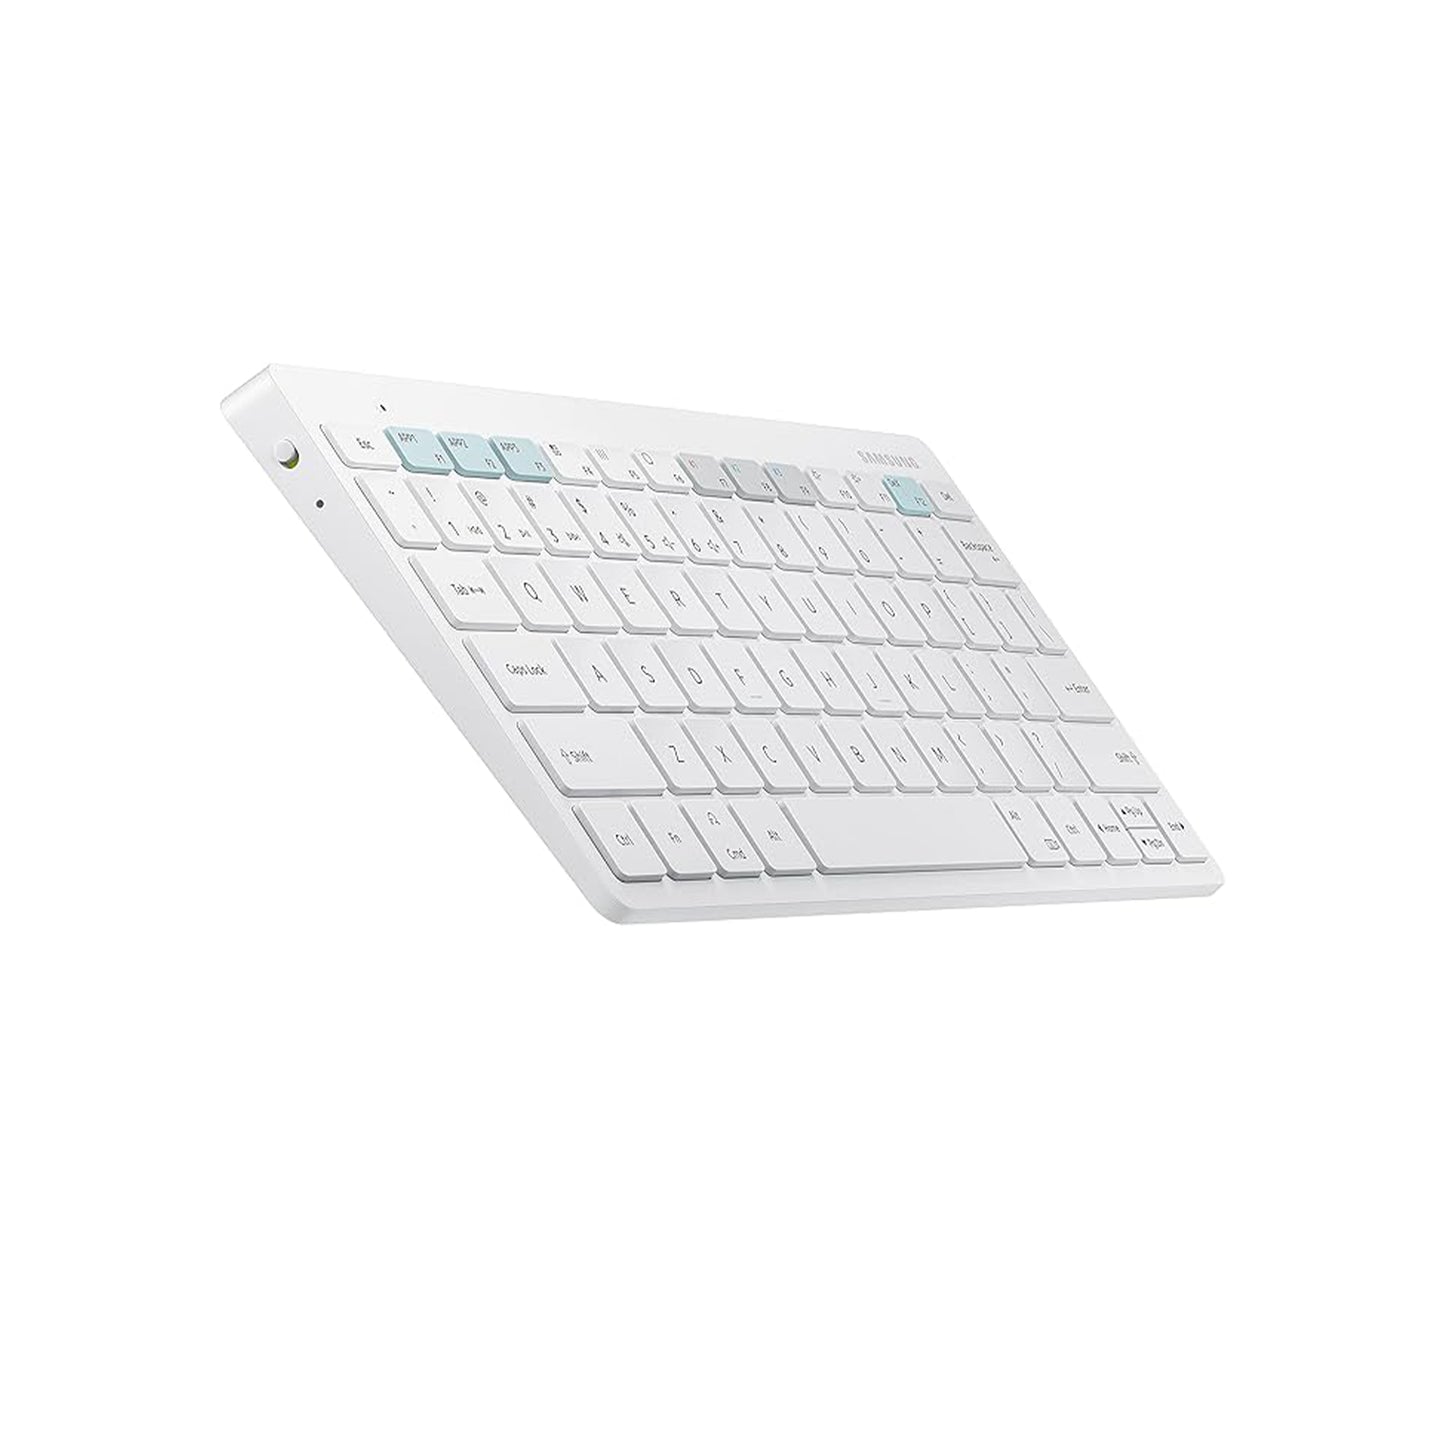 لوحة المفاتيح الذكية الرسمية سامسونج تريو 500 (EJ-B3400UWEGUS)، أبيض - موديل أمريكي 